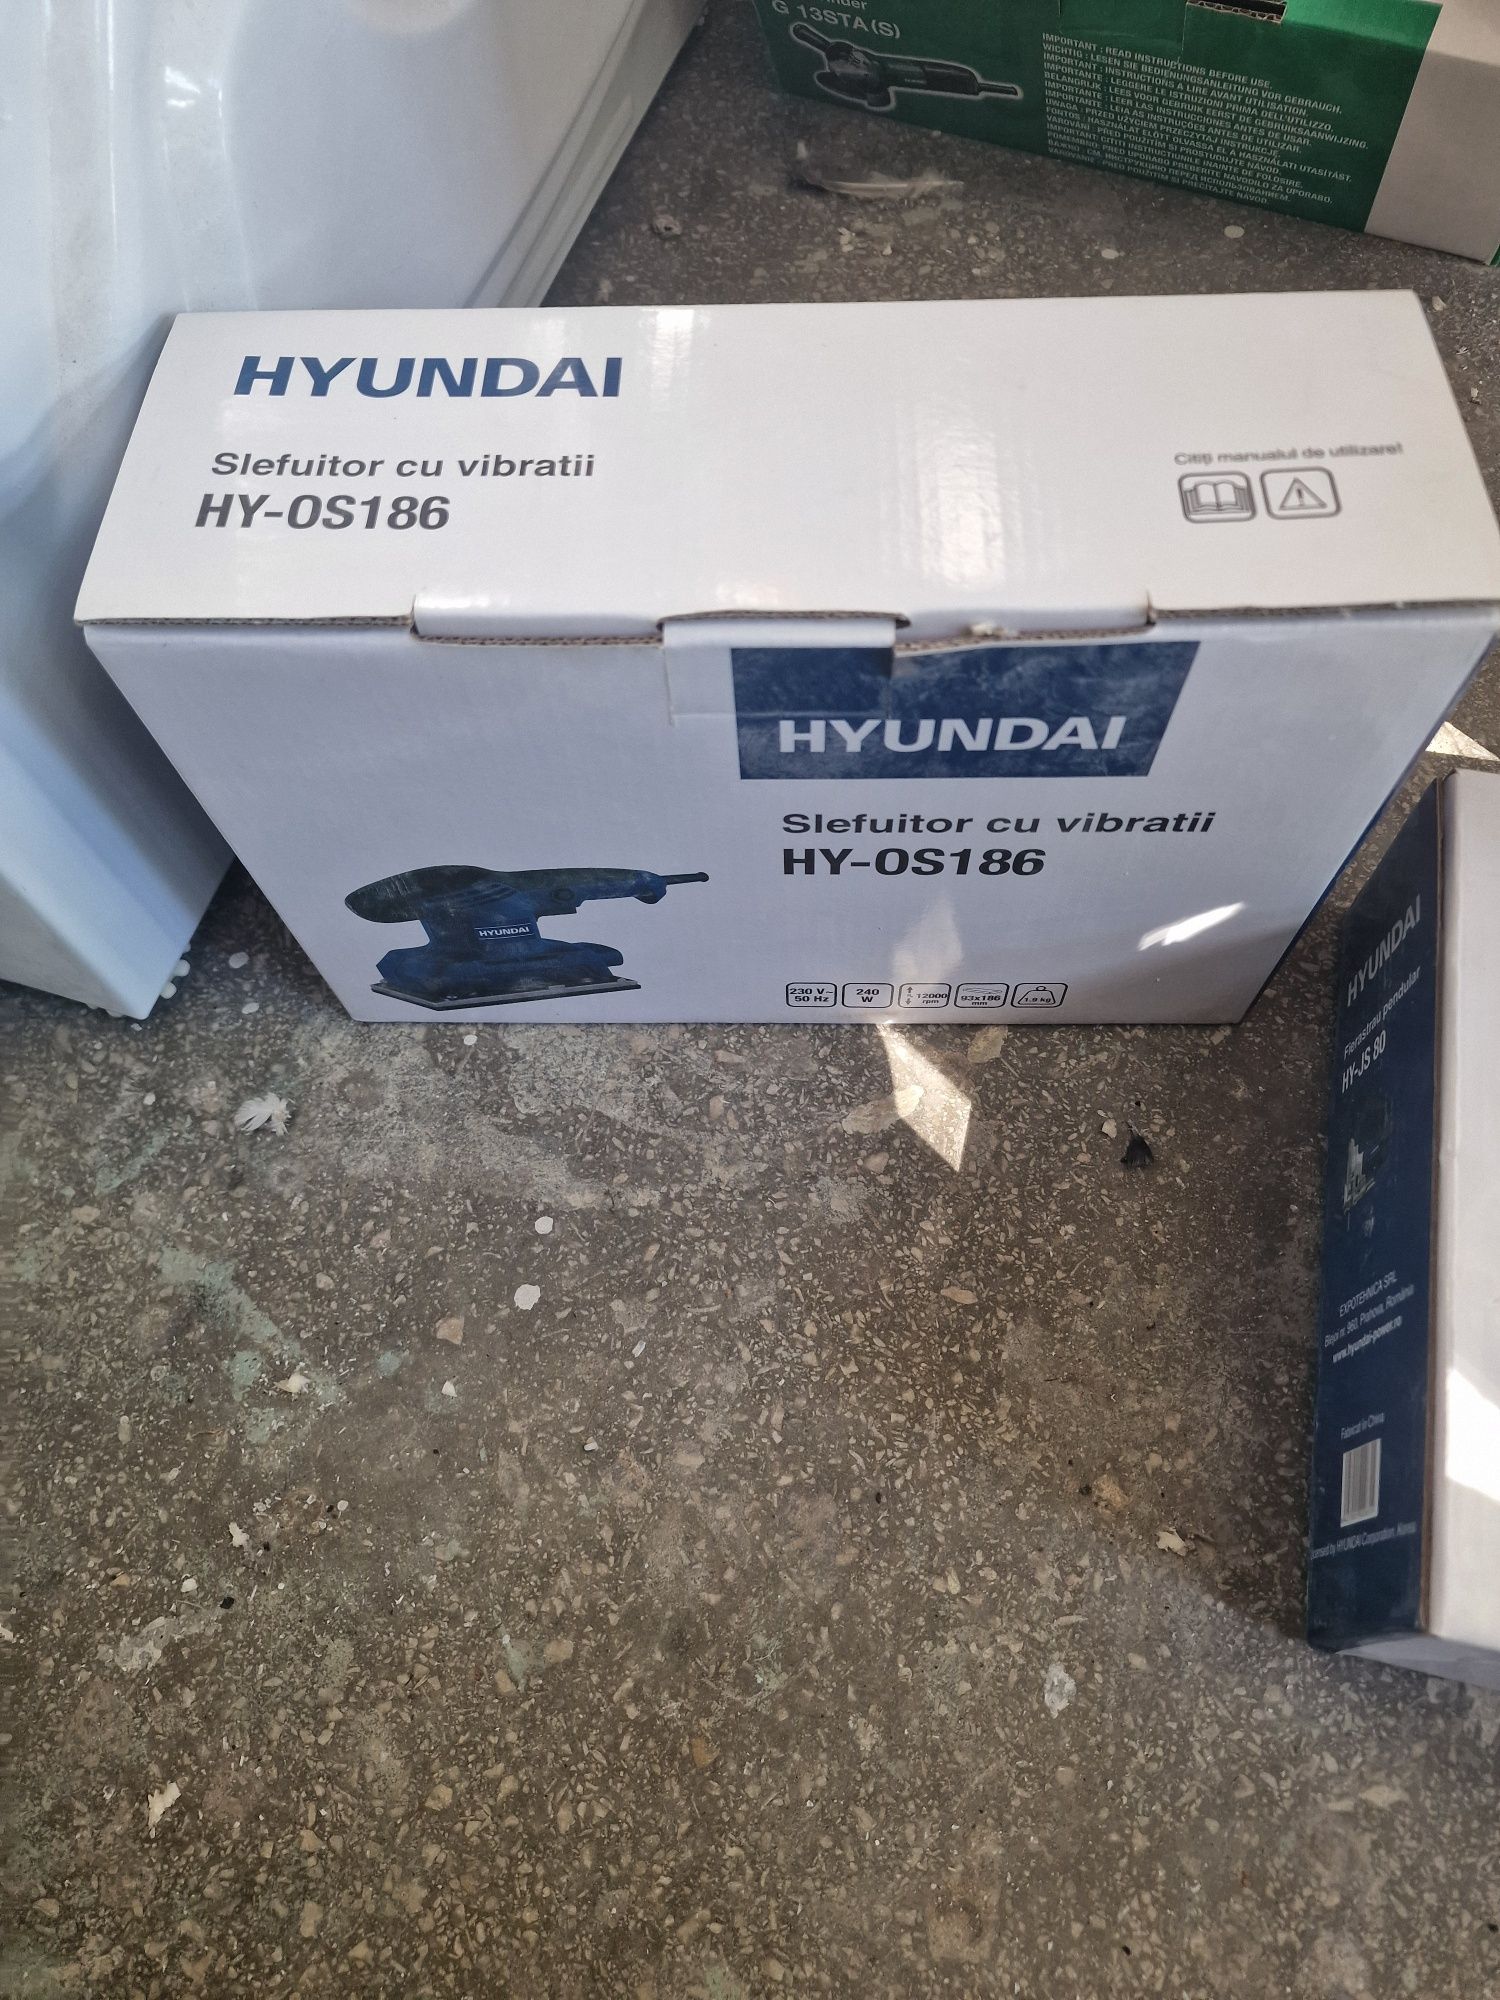 Slefuitor cu vibratii Hyundai